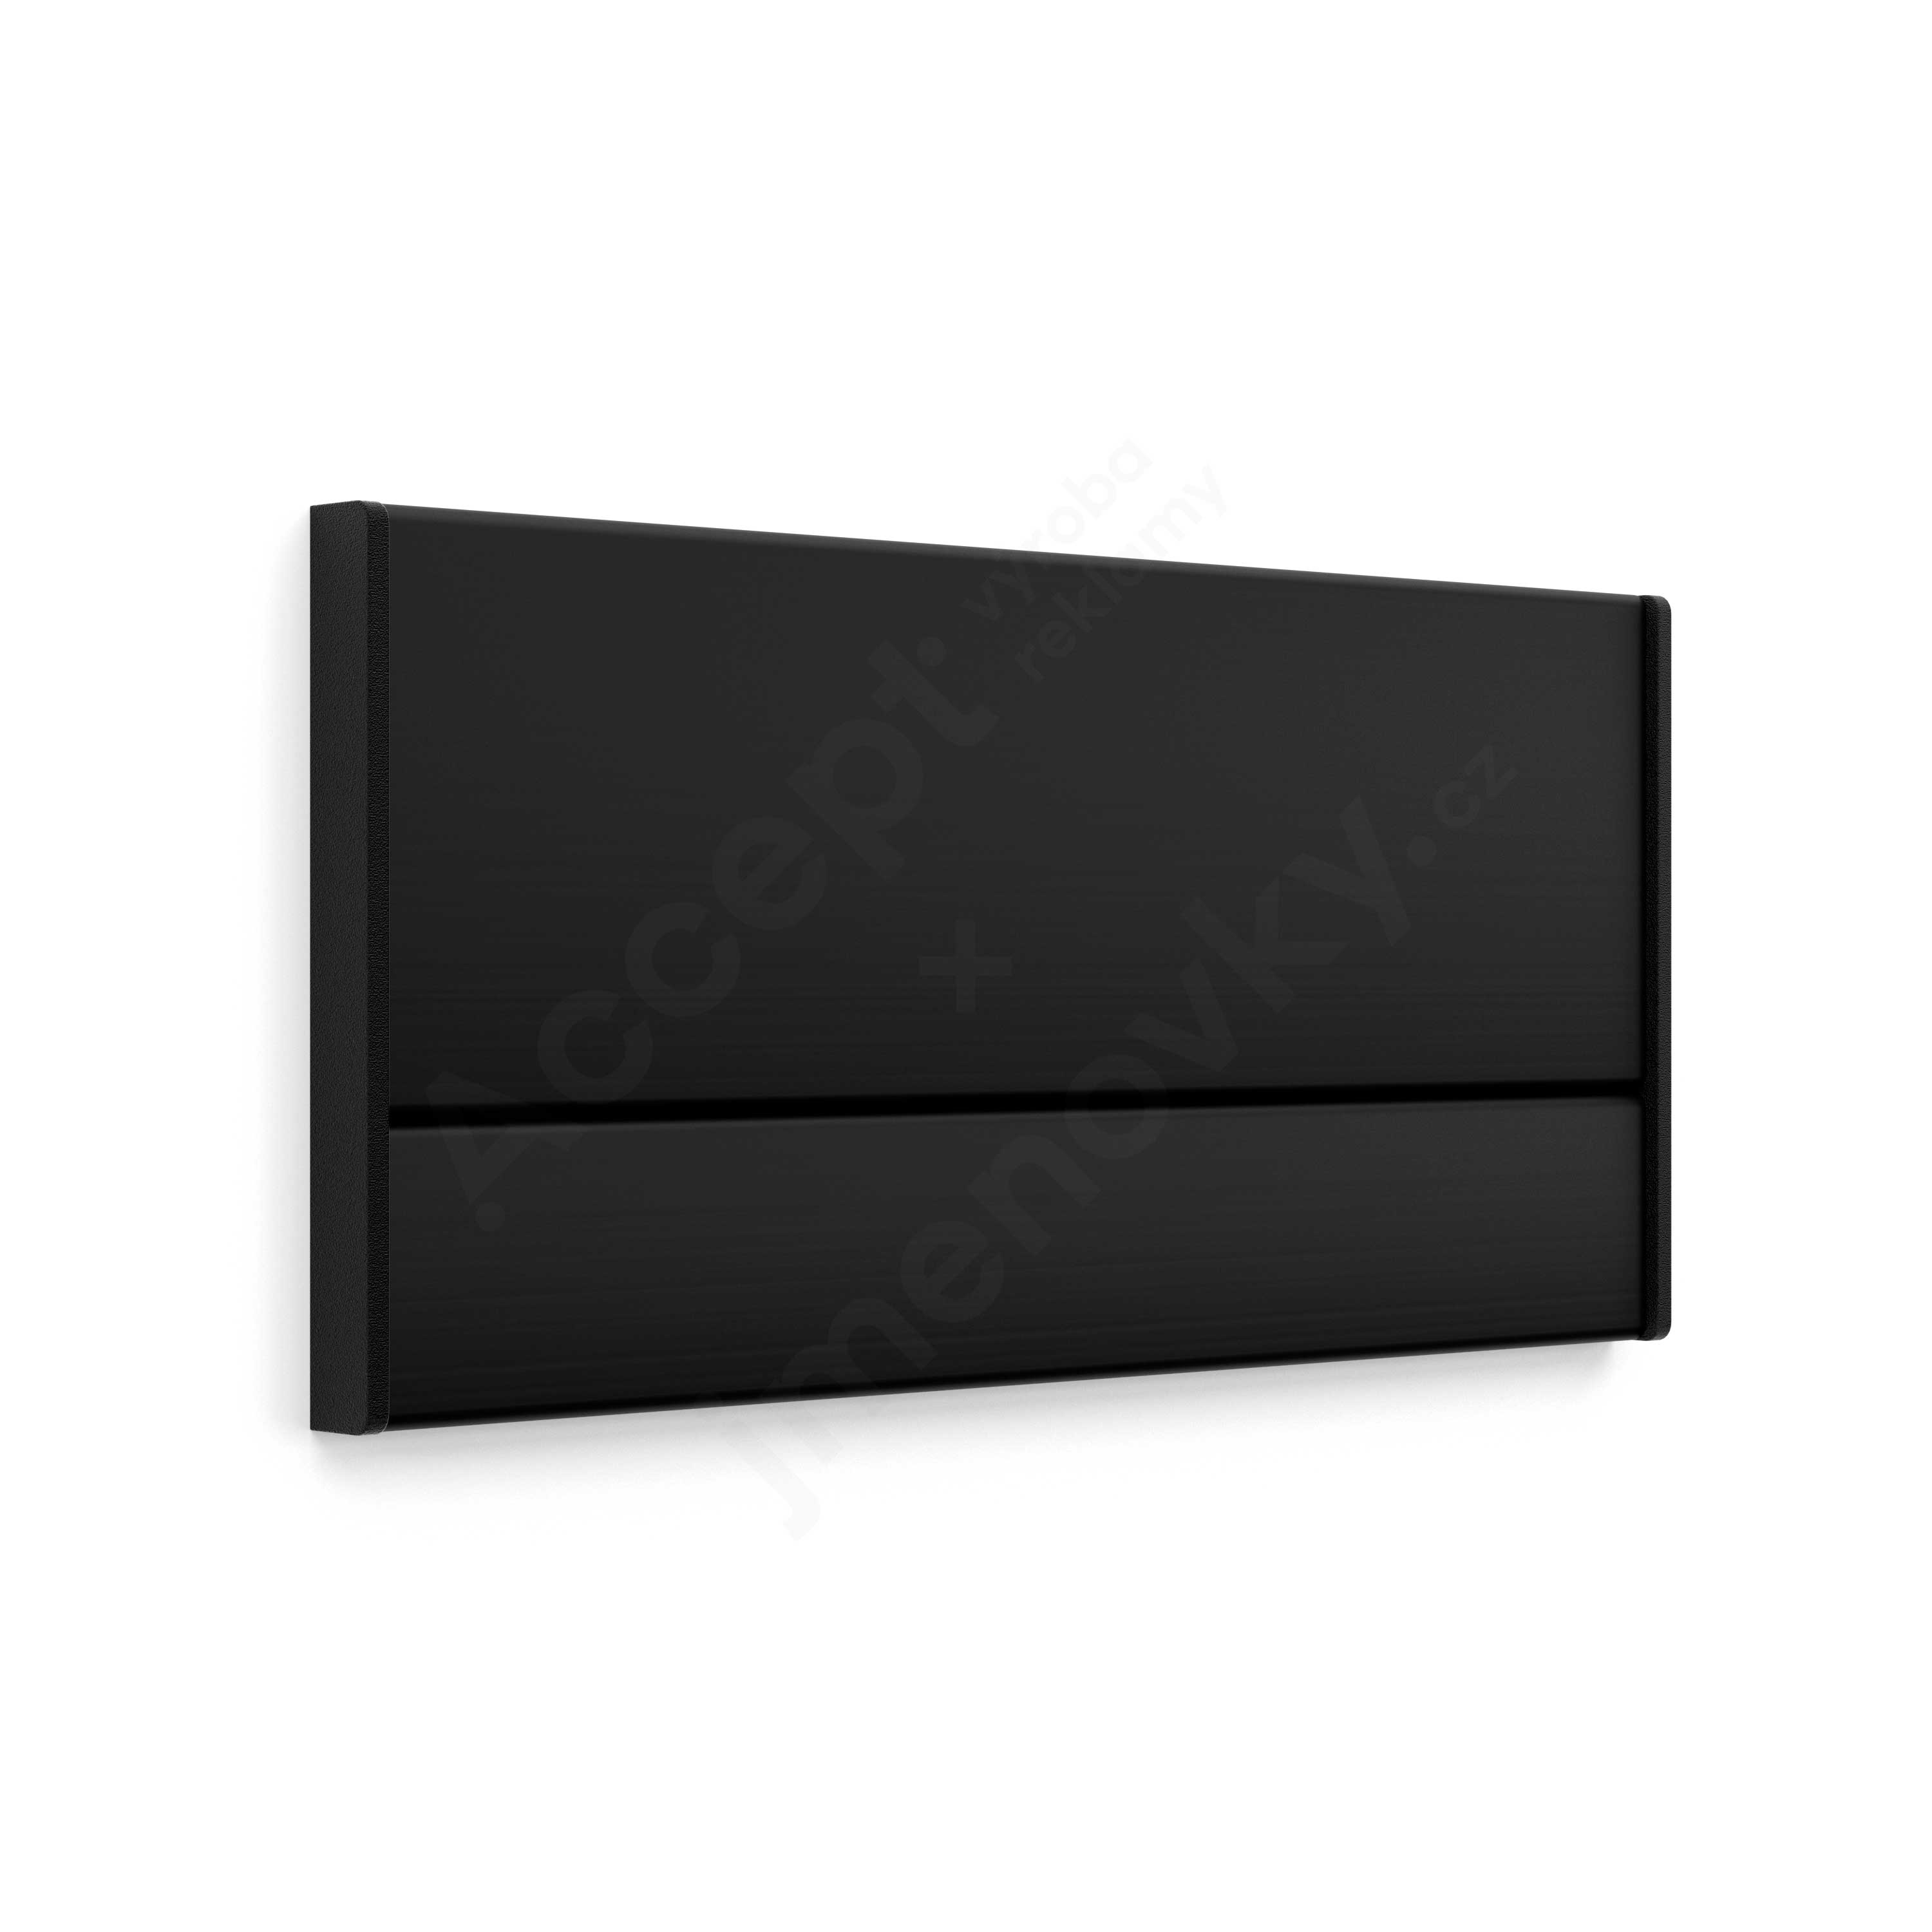 Dveřní tabulka ACS černá (nezásuvný systém, 187 x 93 mm)